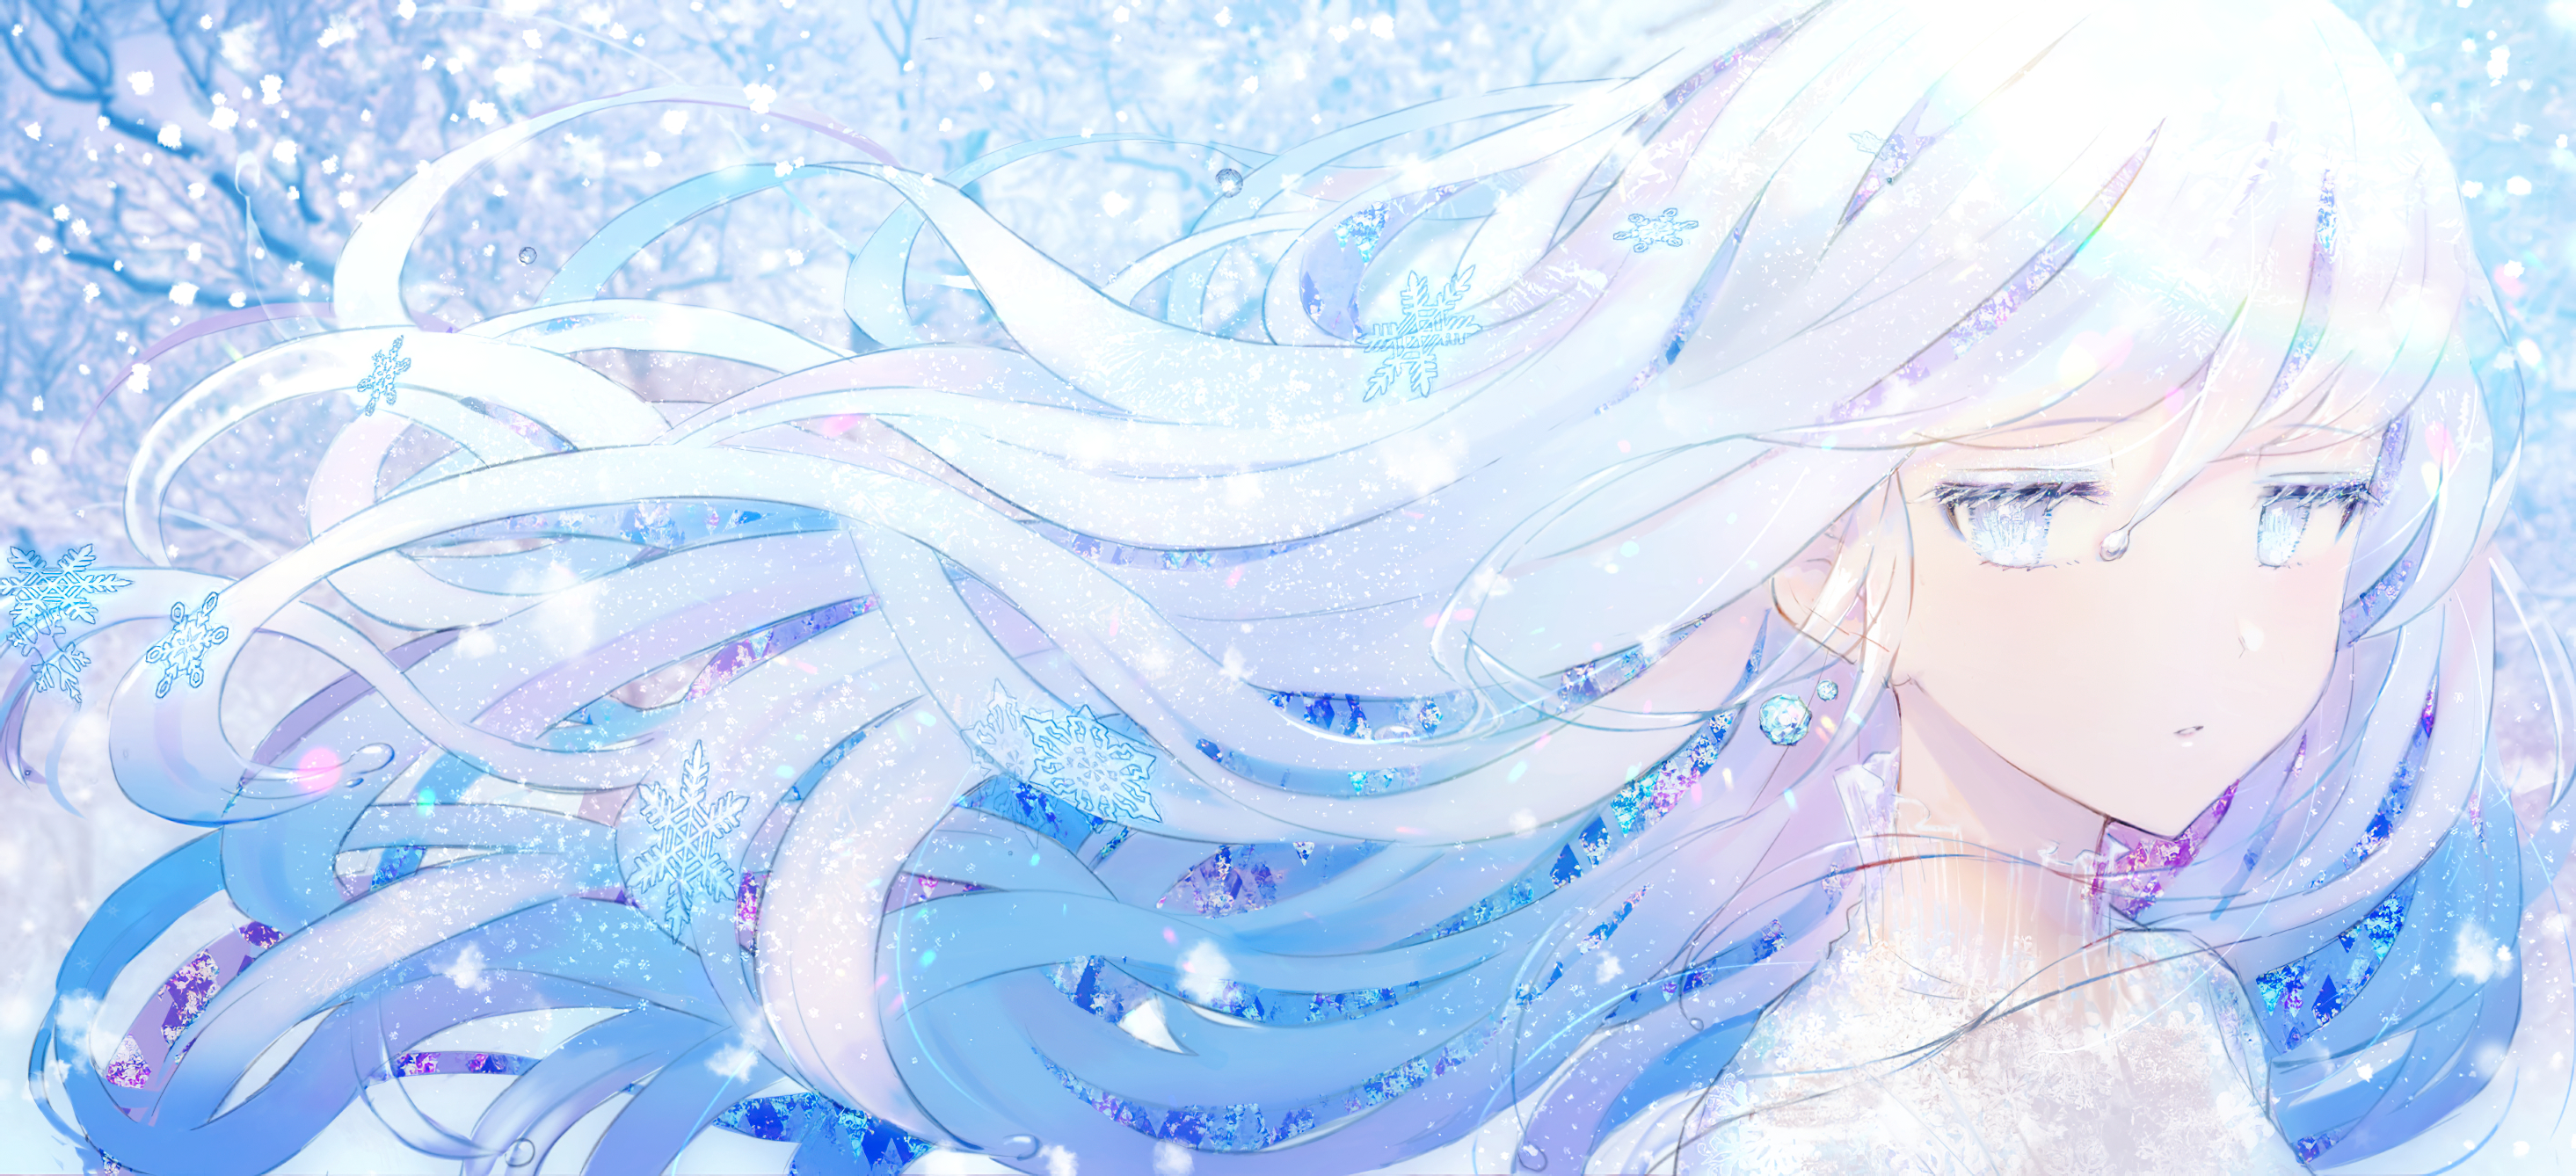 Anime rat girl with blue snowflakes theme ❄️| Aushuri - Free animated GIF -  PicMix